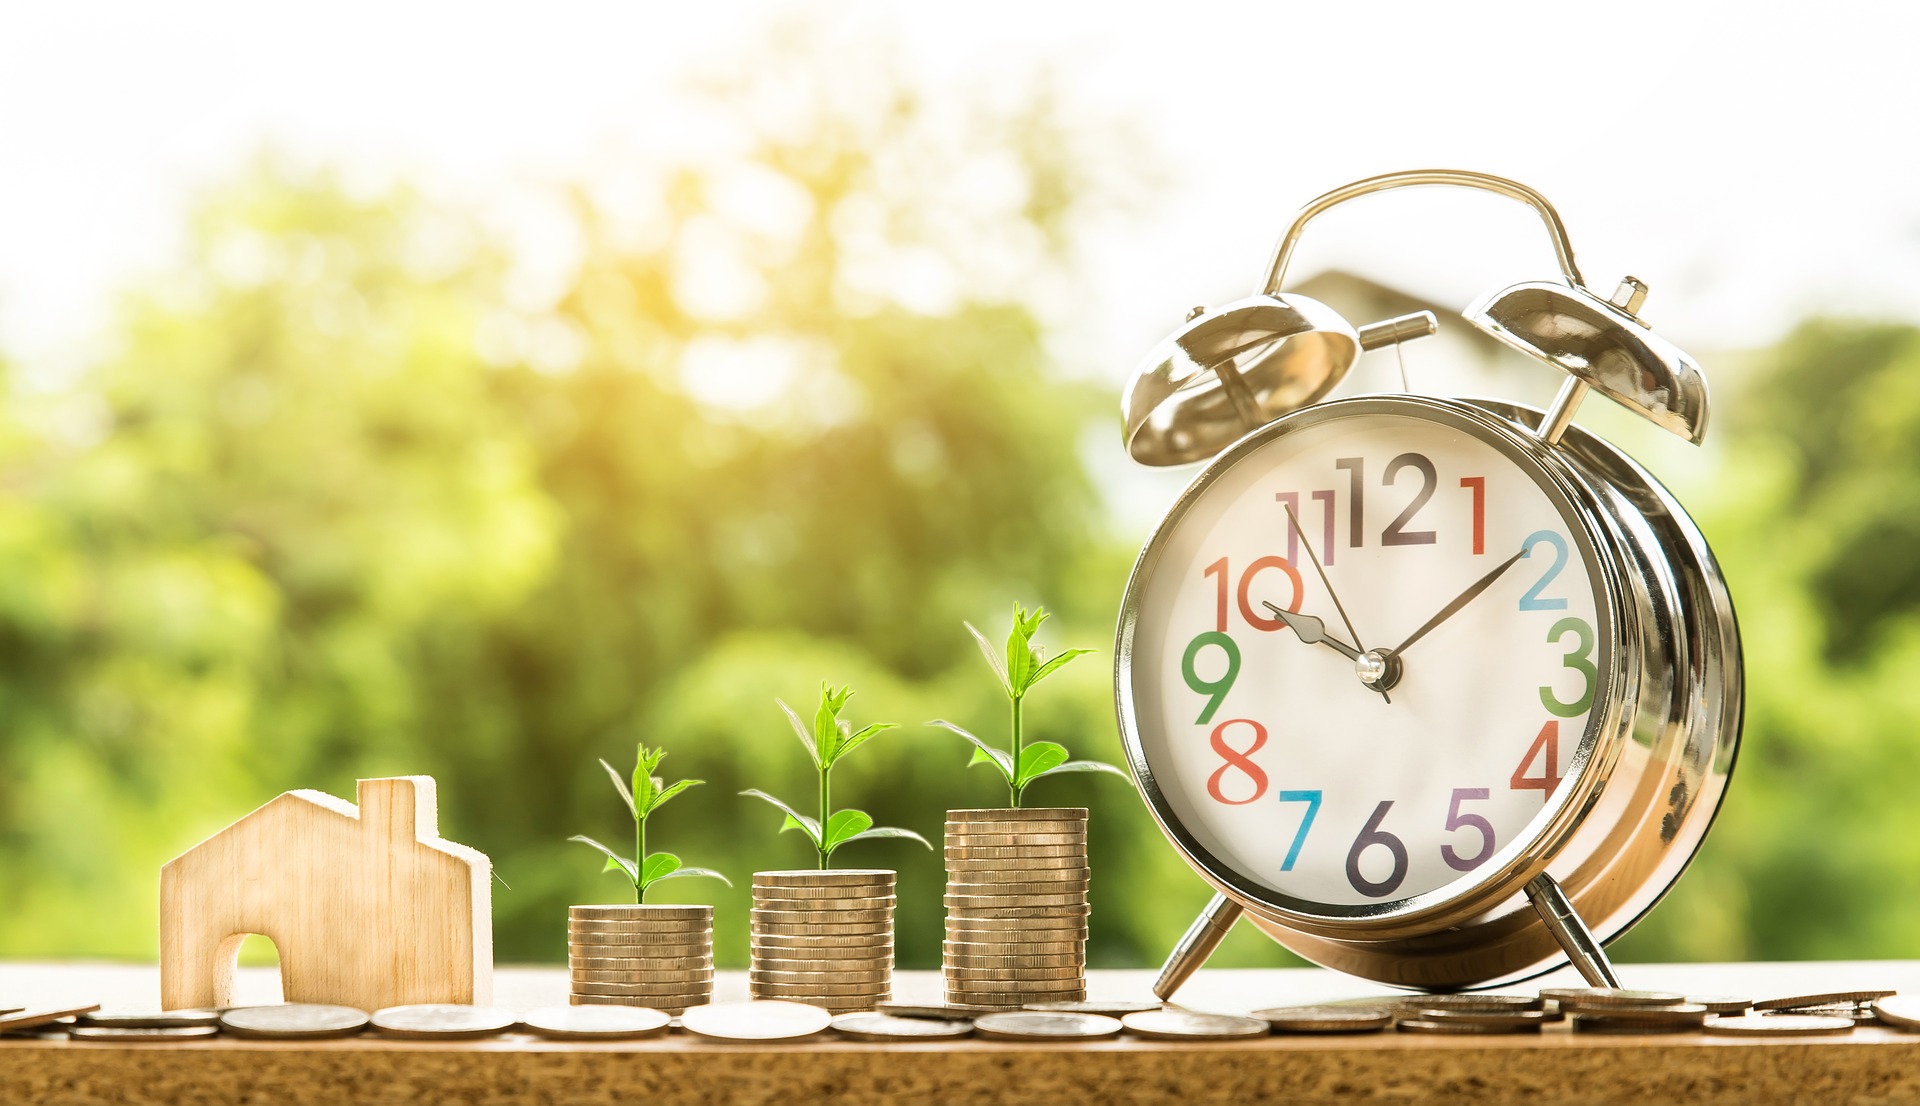 📷 Tempo e dinheiro | Pixabay